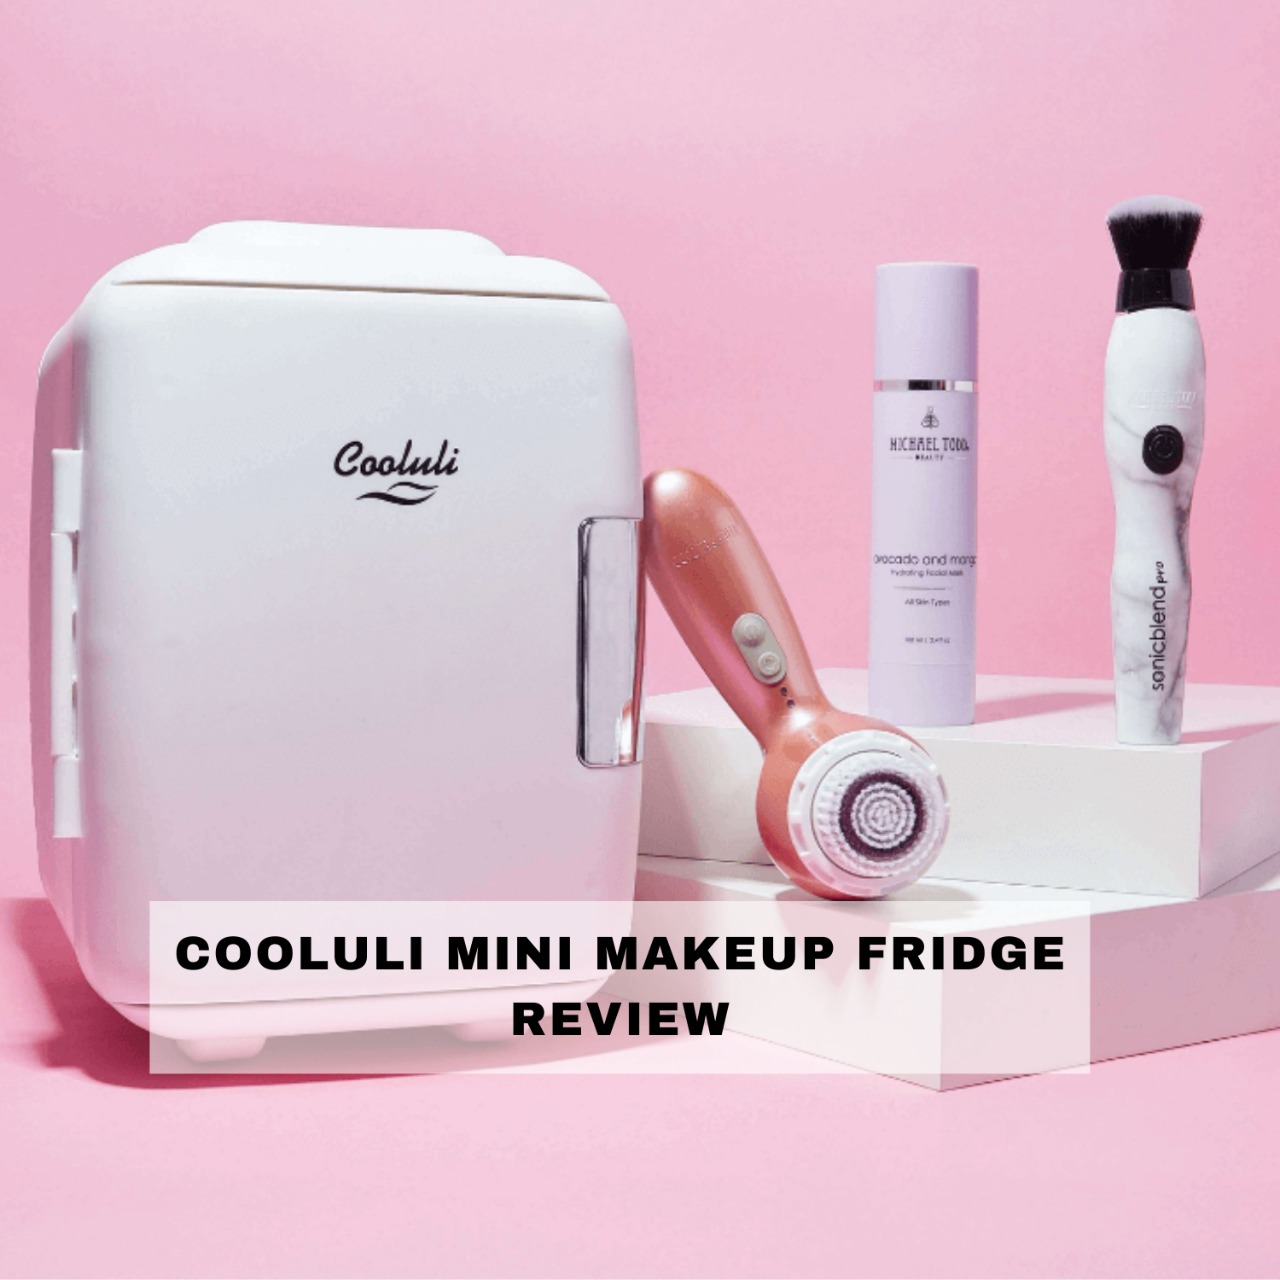 Cooluli Mini Makeup Fridge Electric Cooler Review